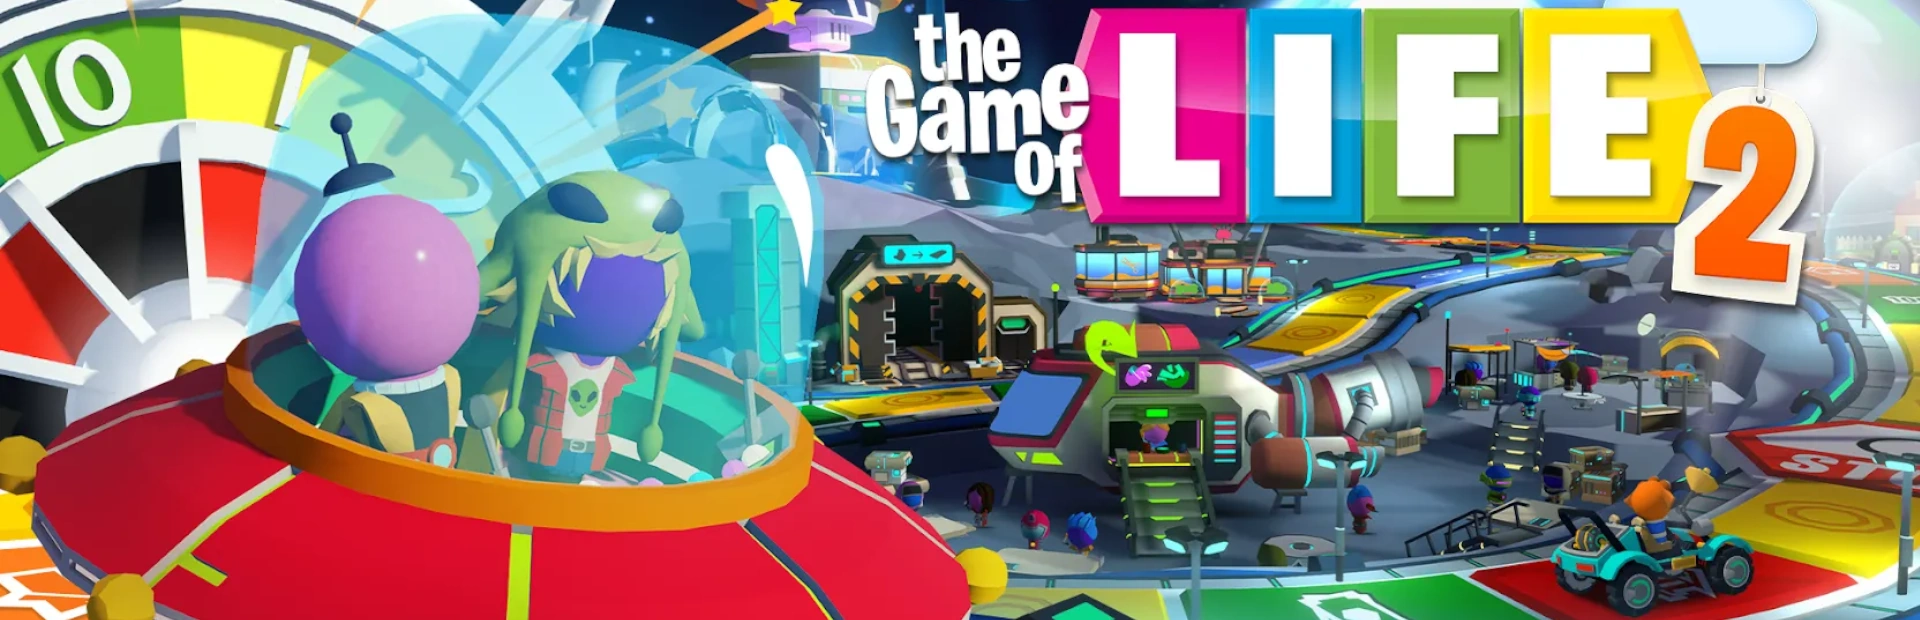 دانلود بازی The Game of Life 2 برای کامپیوتر | گیمباتو